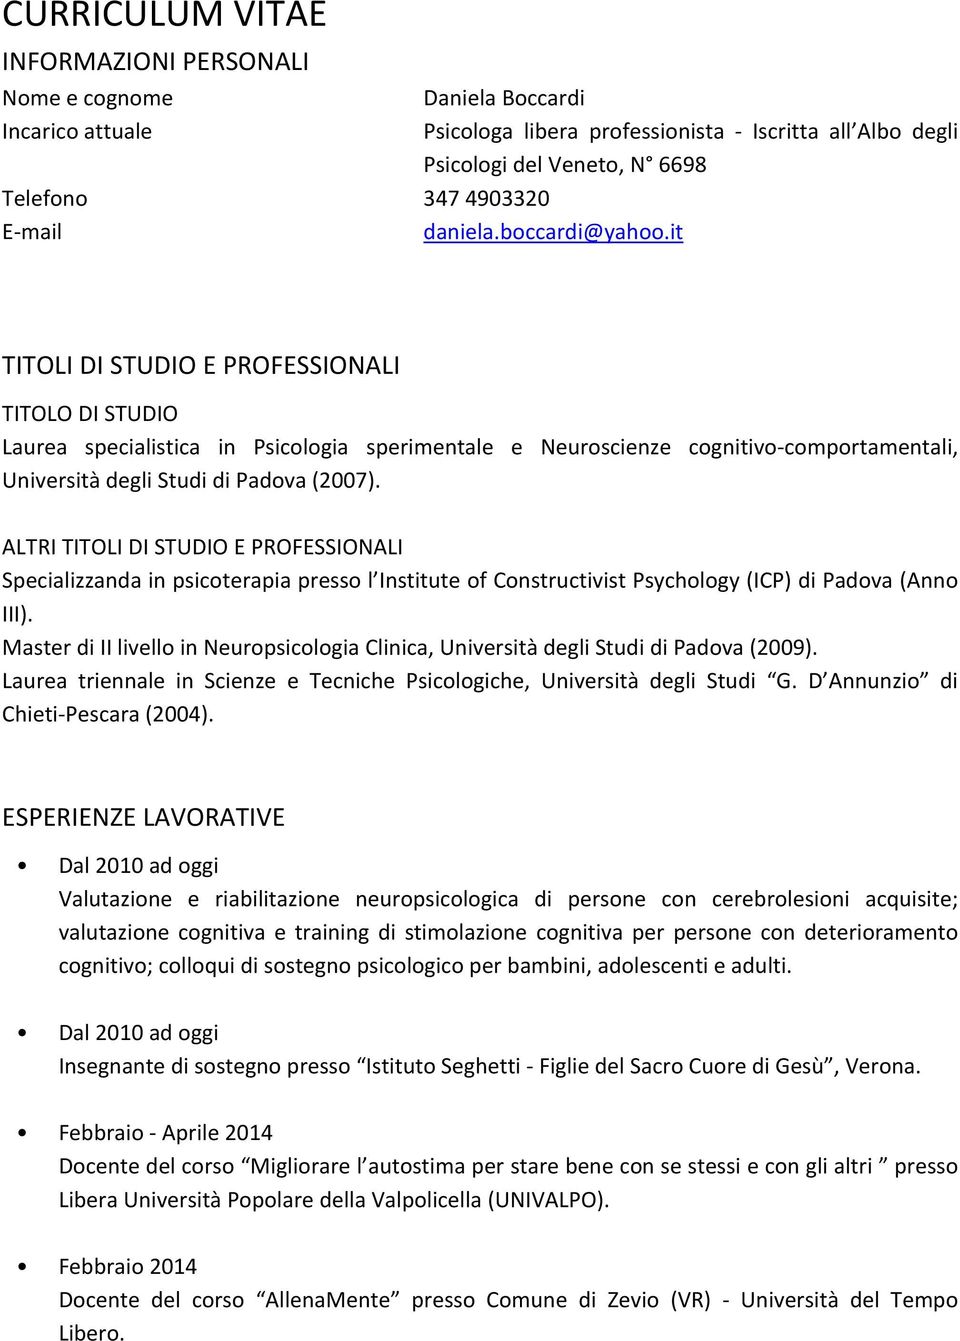 sperimentale e Neuroscienze cognitivo comportamentali, Università degli Studi di Padova (2007).